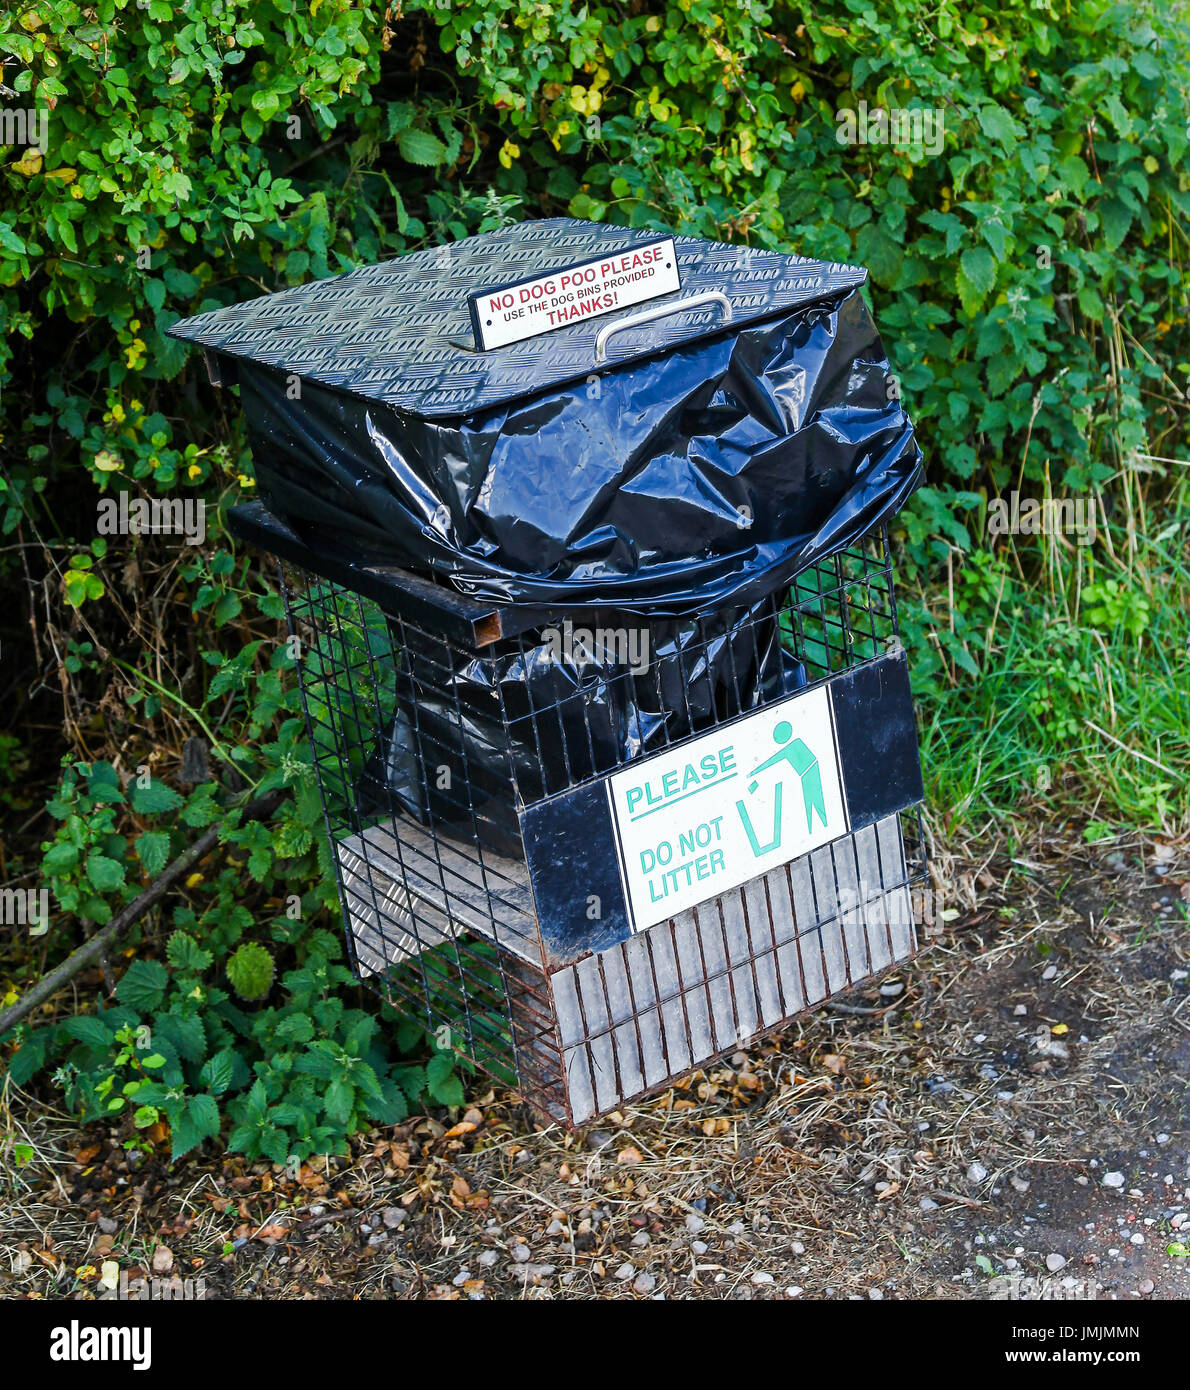 Una lettiera o bidone dei rifiuti con un segno su di esso dicendo "no dog poo si prega di utilizzare gli appositi cestini' Foto Stock